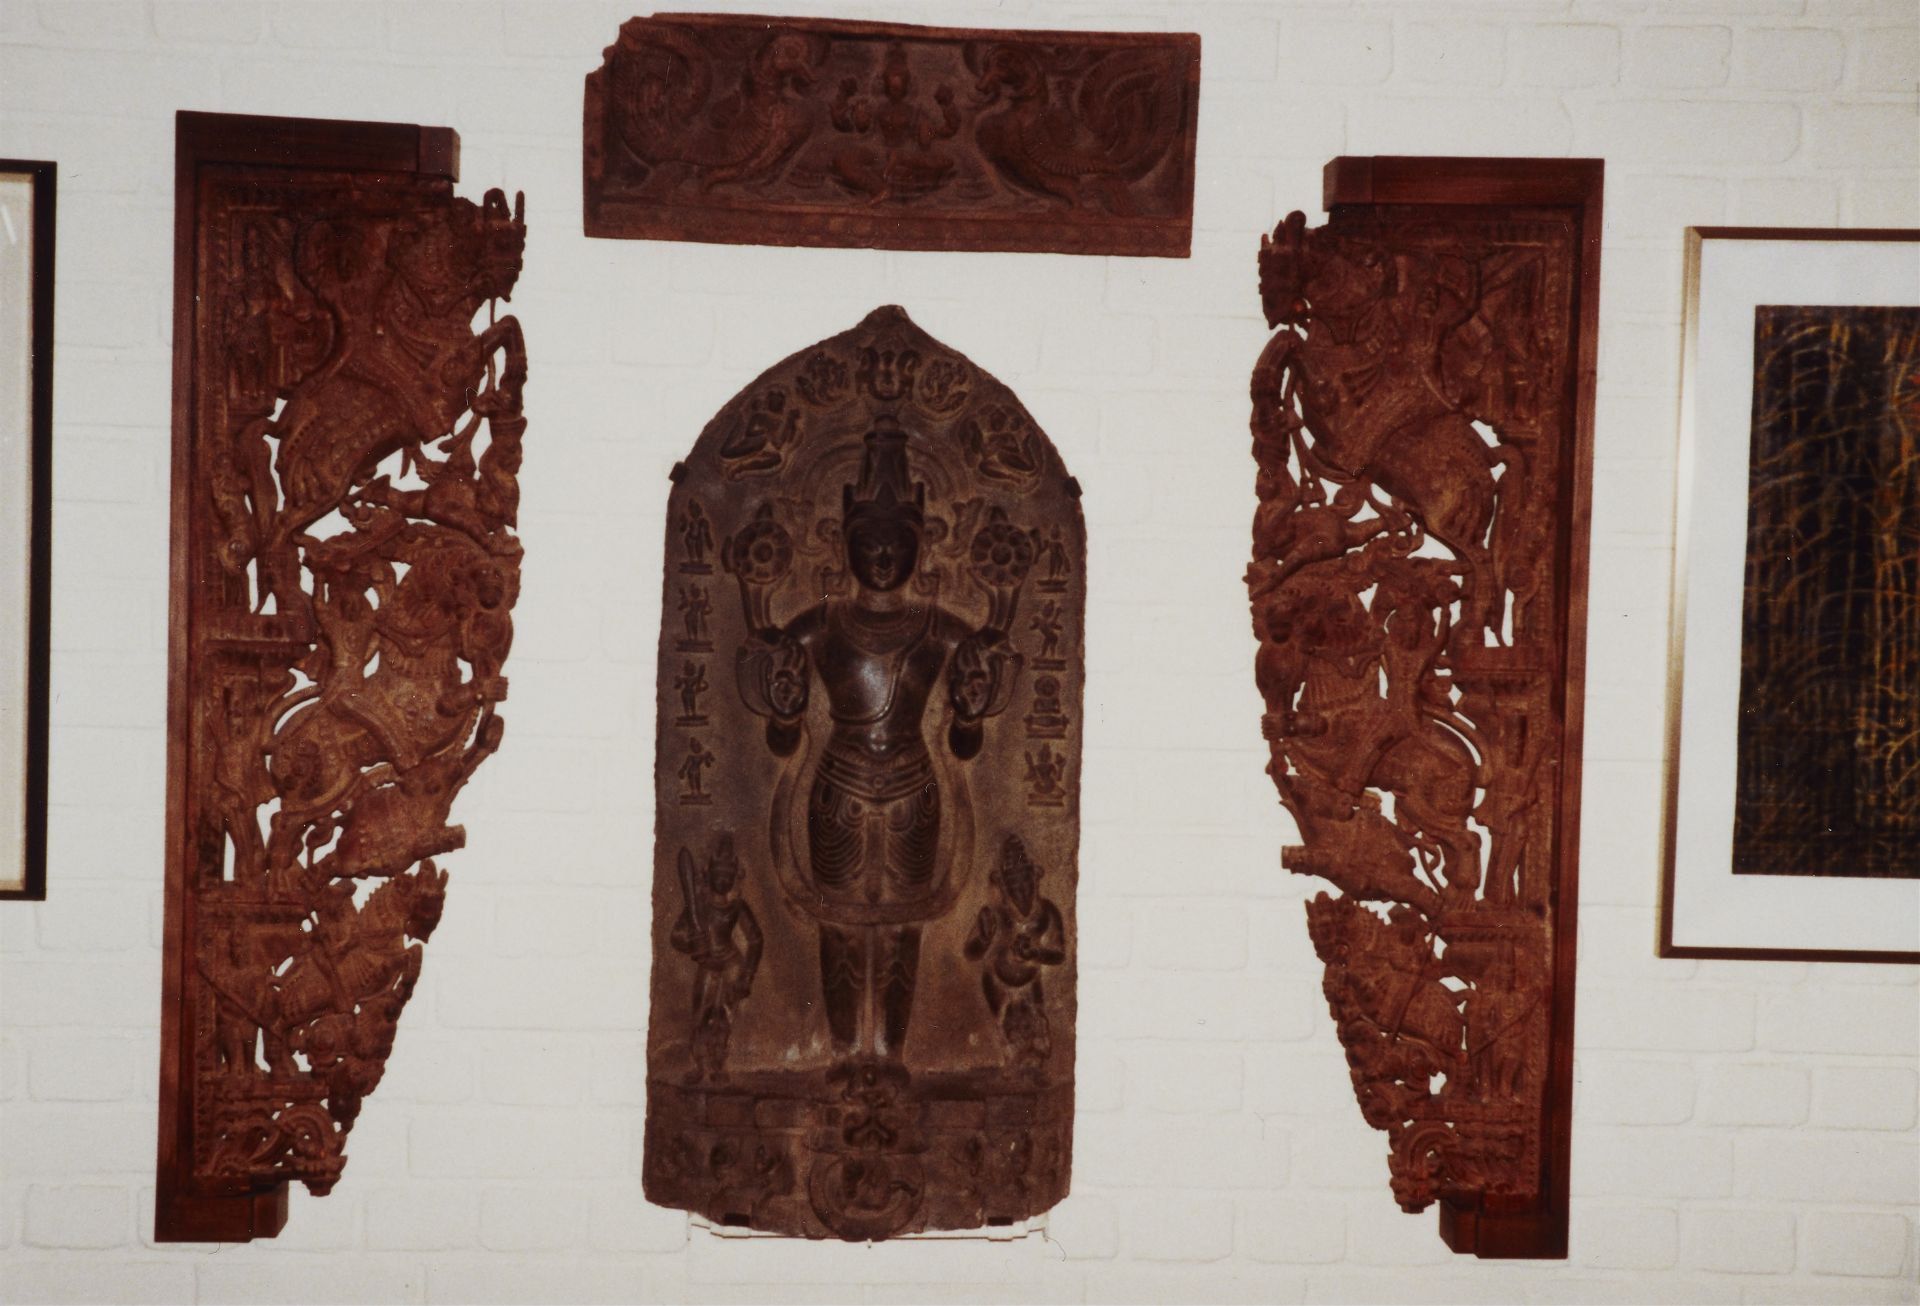 Paar große Konsolen. Möglicherweise Teak-Holz. Süd-Indien, Tamil Nadu. 19./frühes 20. Jh. - Bild 3 aus 3